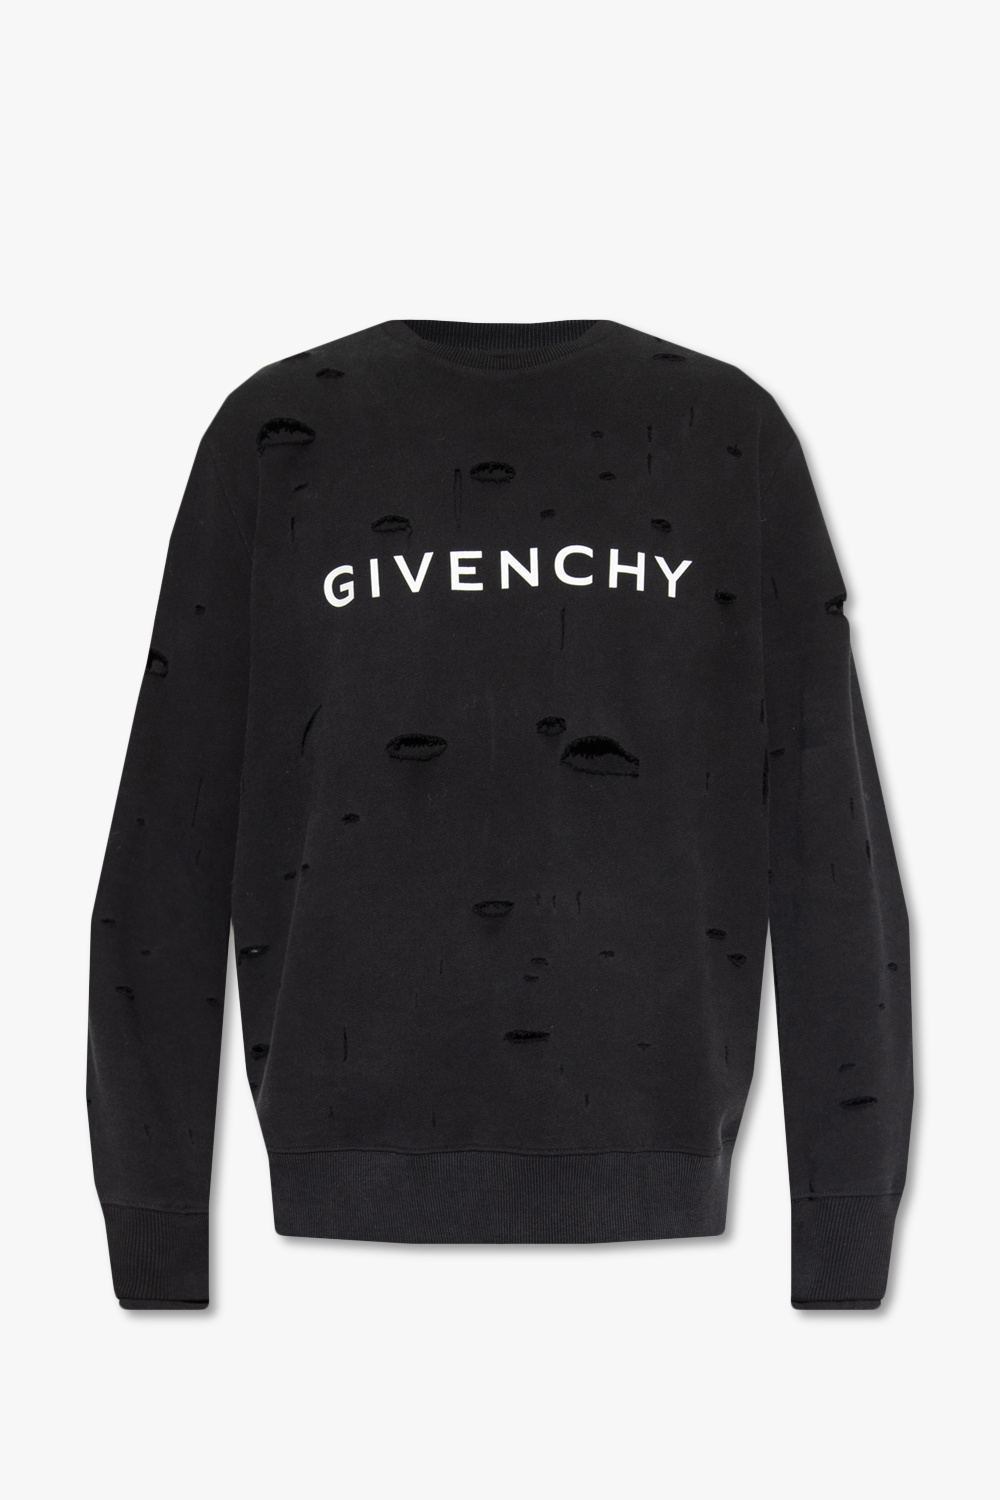 Givenchy Sweatshirt with logo | Men's Clothing | Vitkac